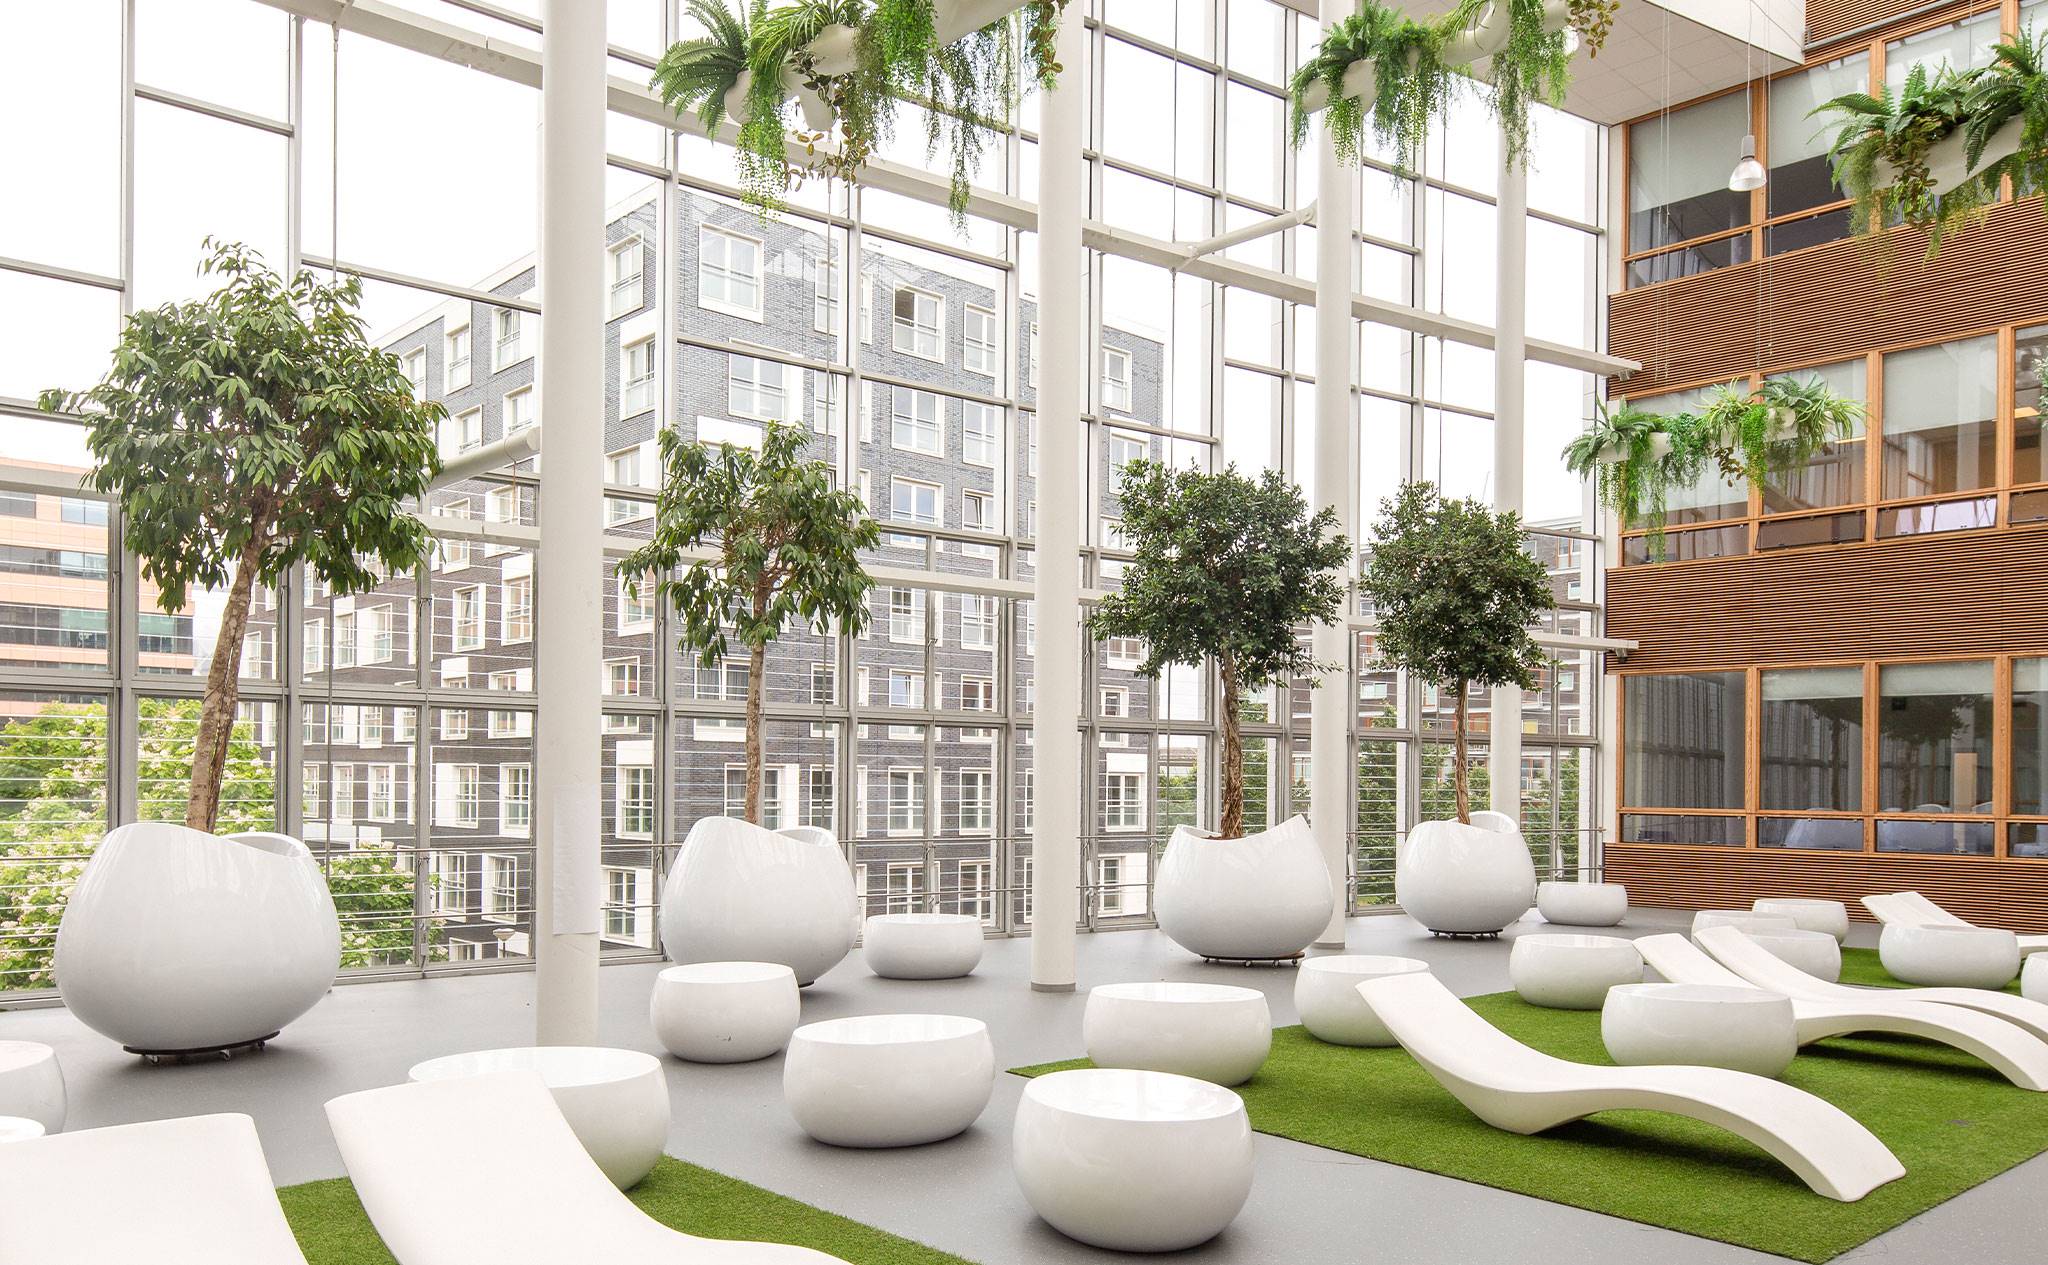 Hogeschool van Amsterdam, Fraijlemaborg - Door ons verzorgt groen voor deze hogeschool in Amsterdam.